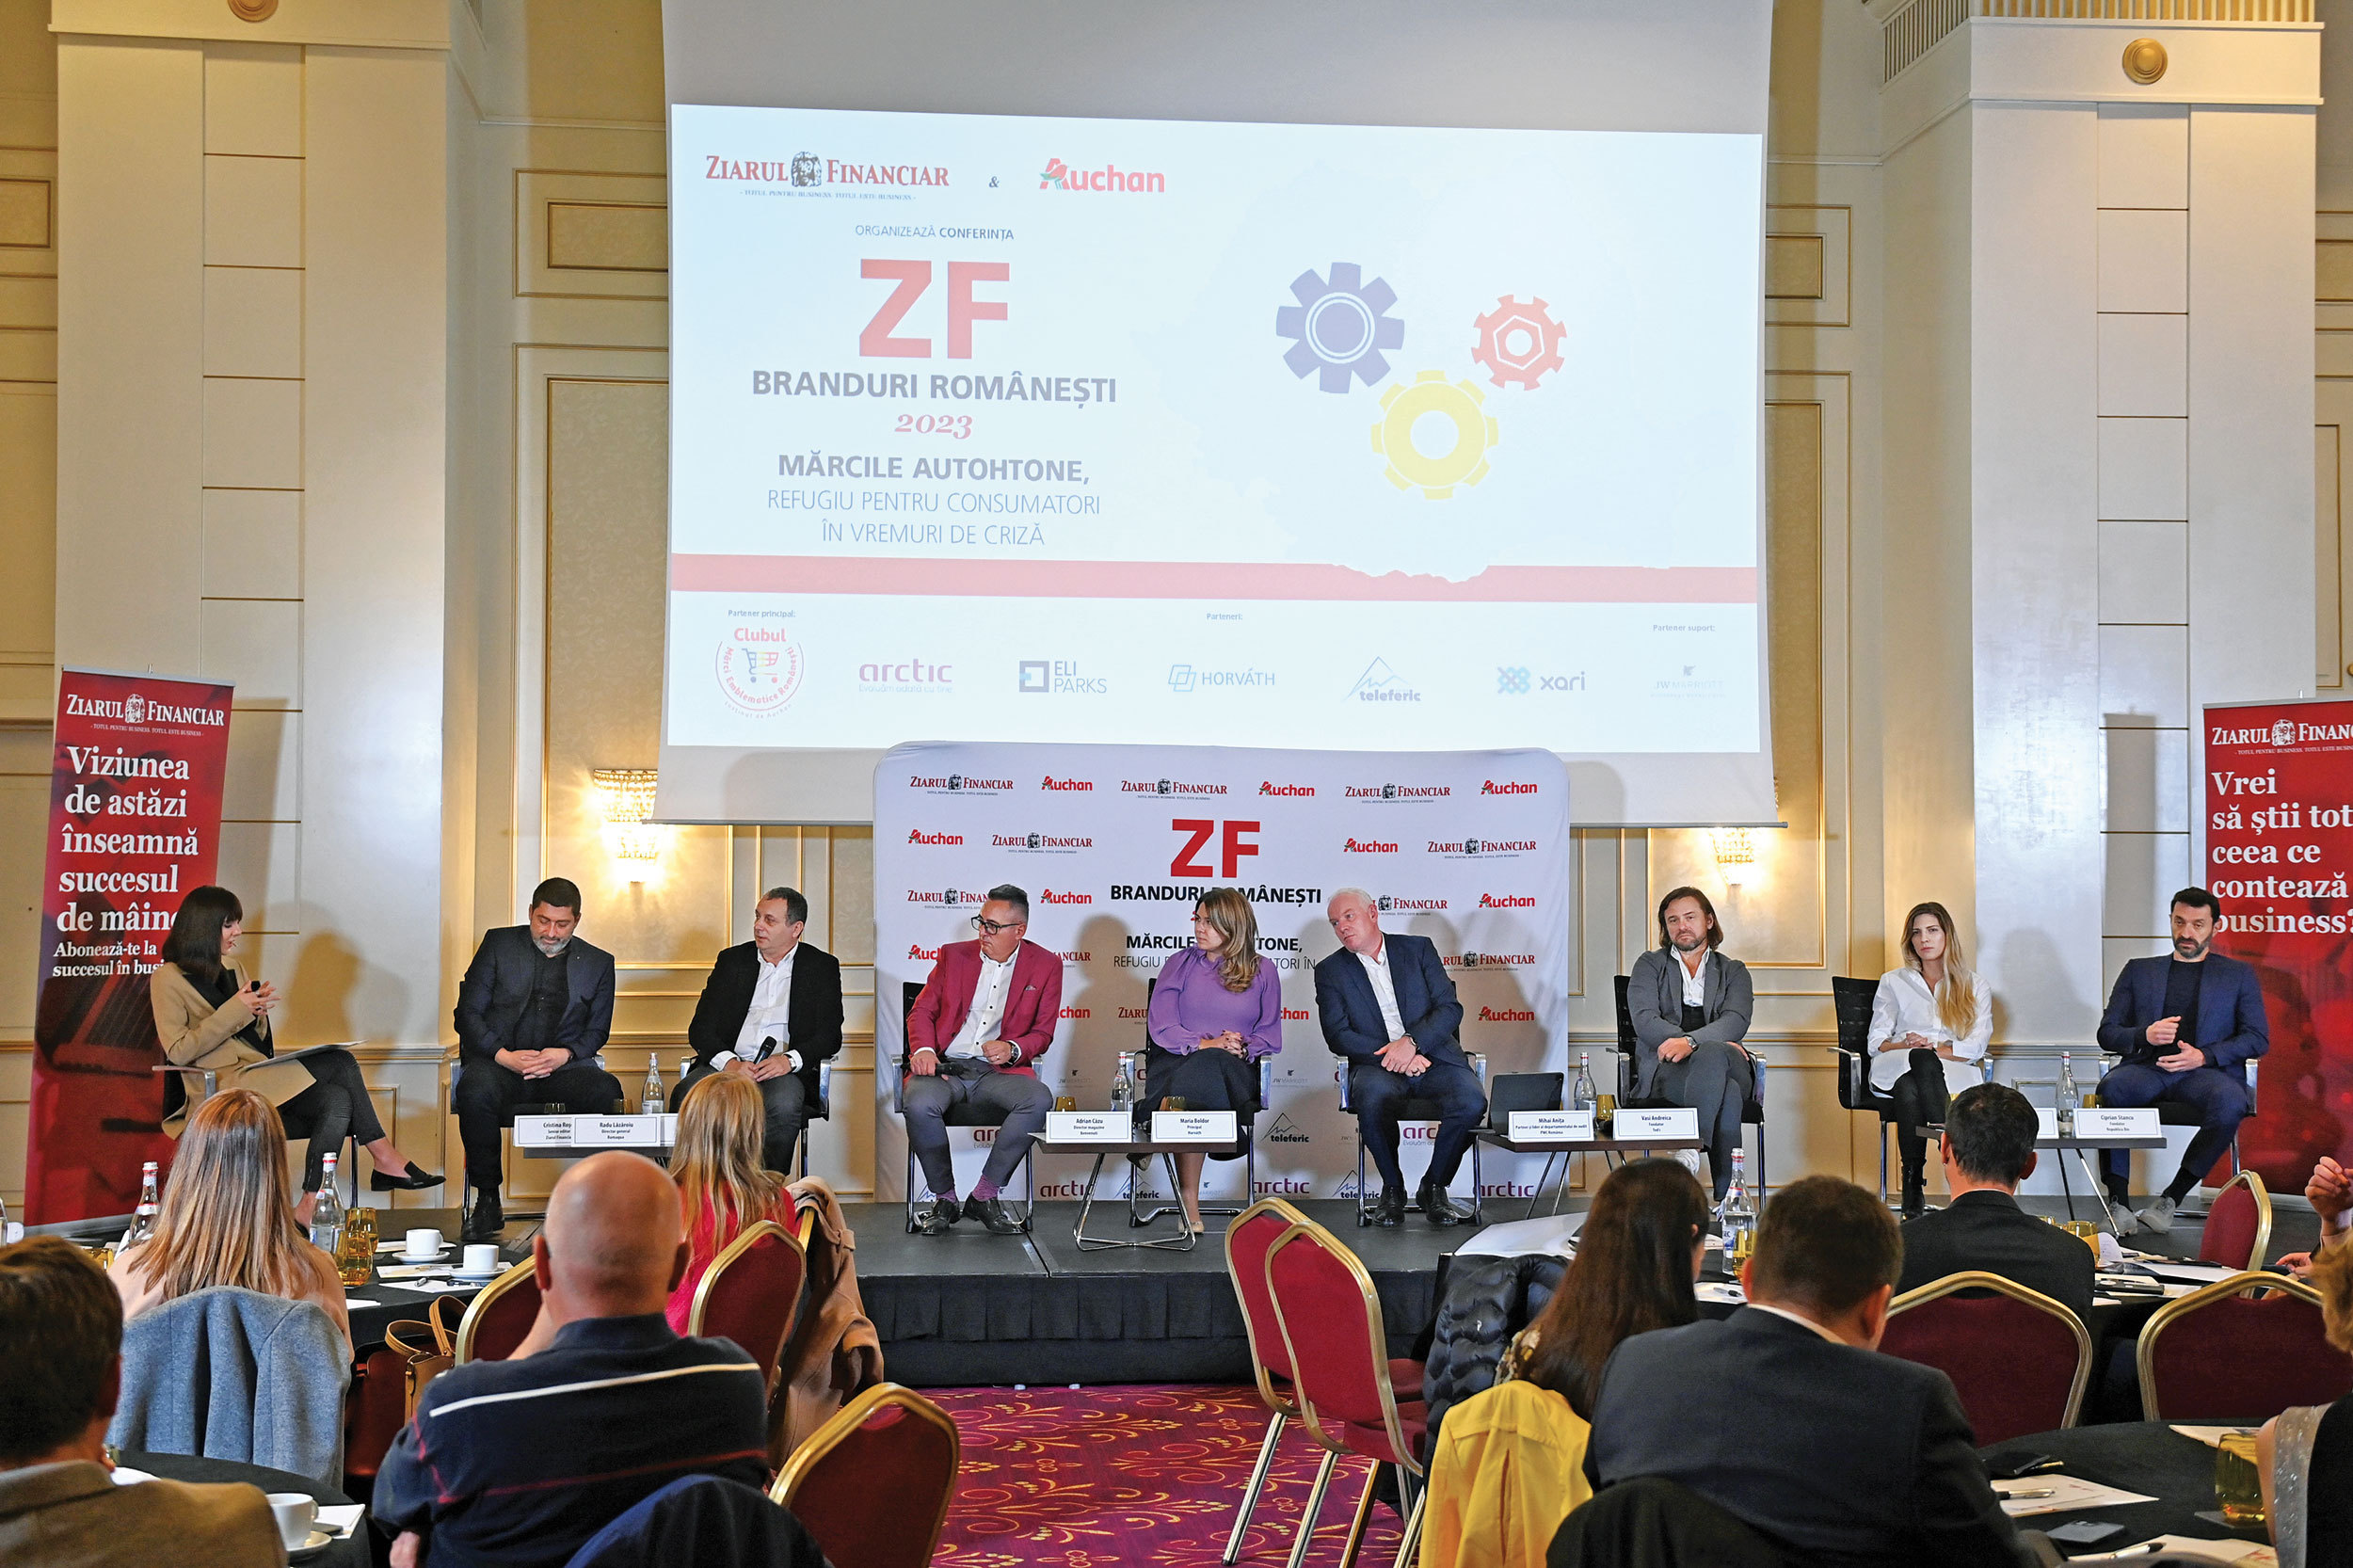 ZF Branduri româneşti 2023: mărcile autohtone, refugiu pentru consumatori în vremuri de criză. Loializarea consumatorilor şi adaptarea continuă la noile tendinţe sunt esenţiale pentru dezvoltarea brandurilor româneşti